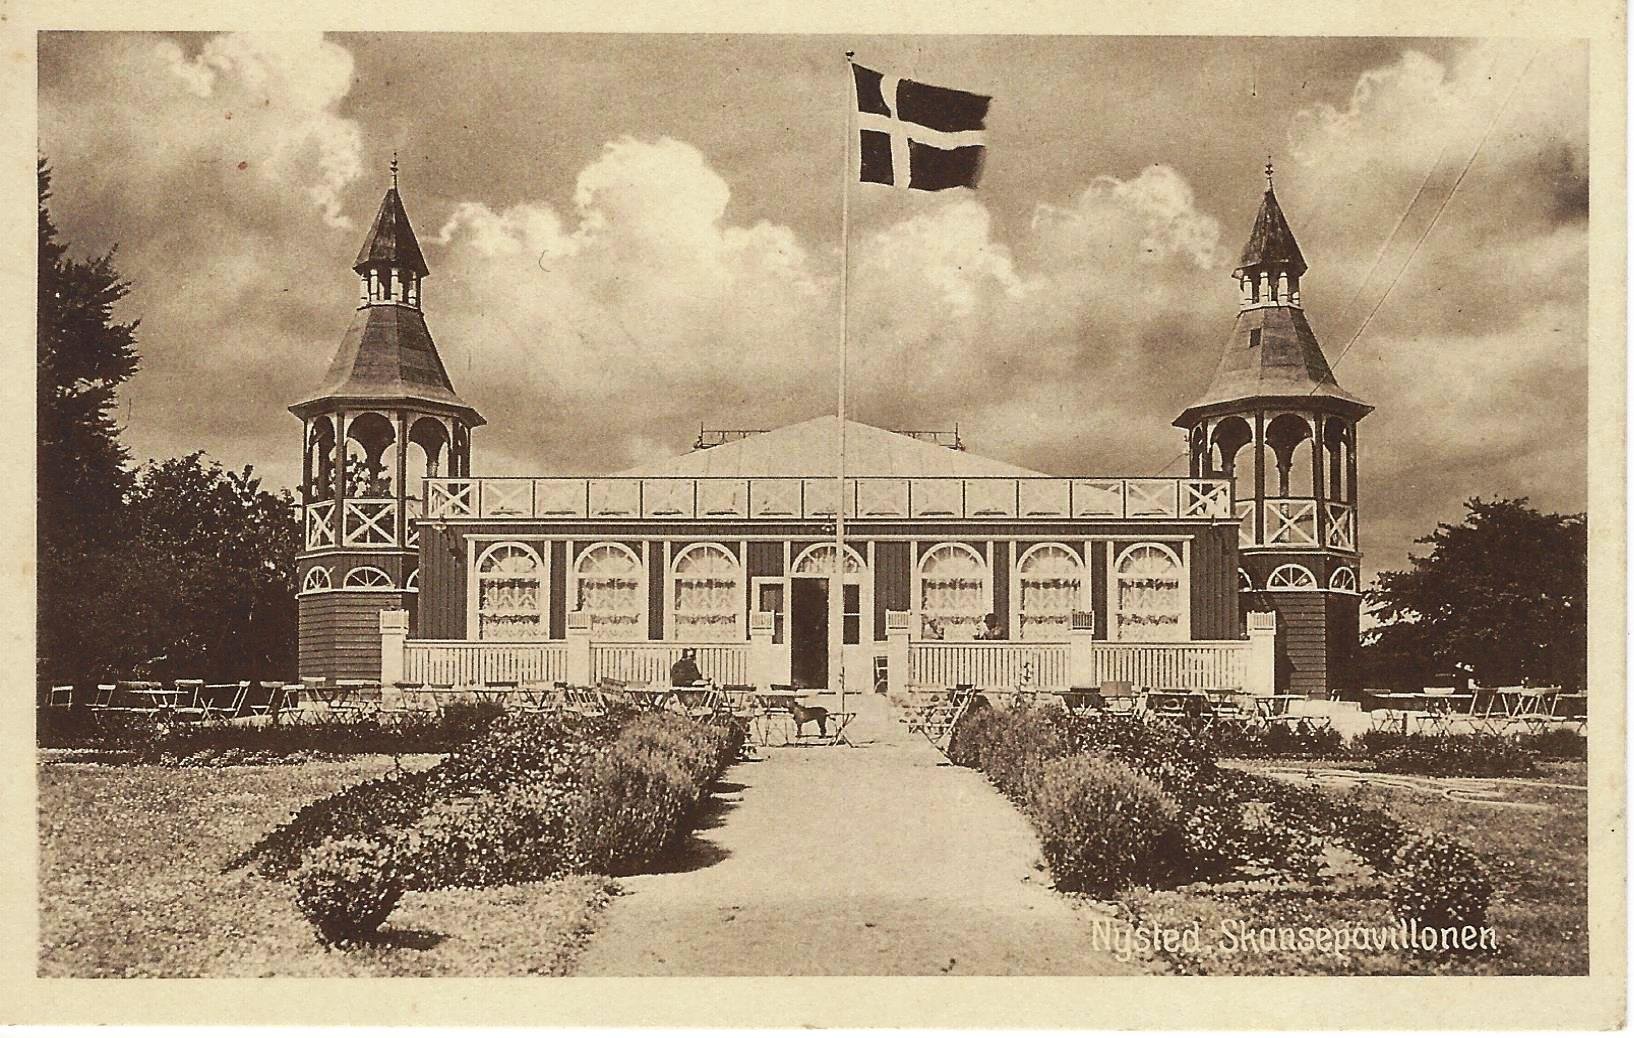 16-Skansepavillonen-1948-02